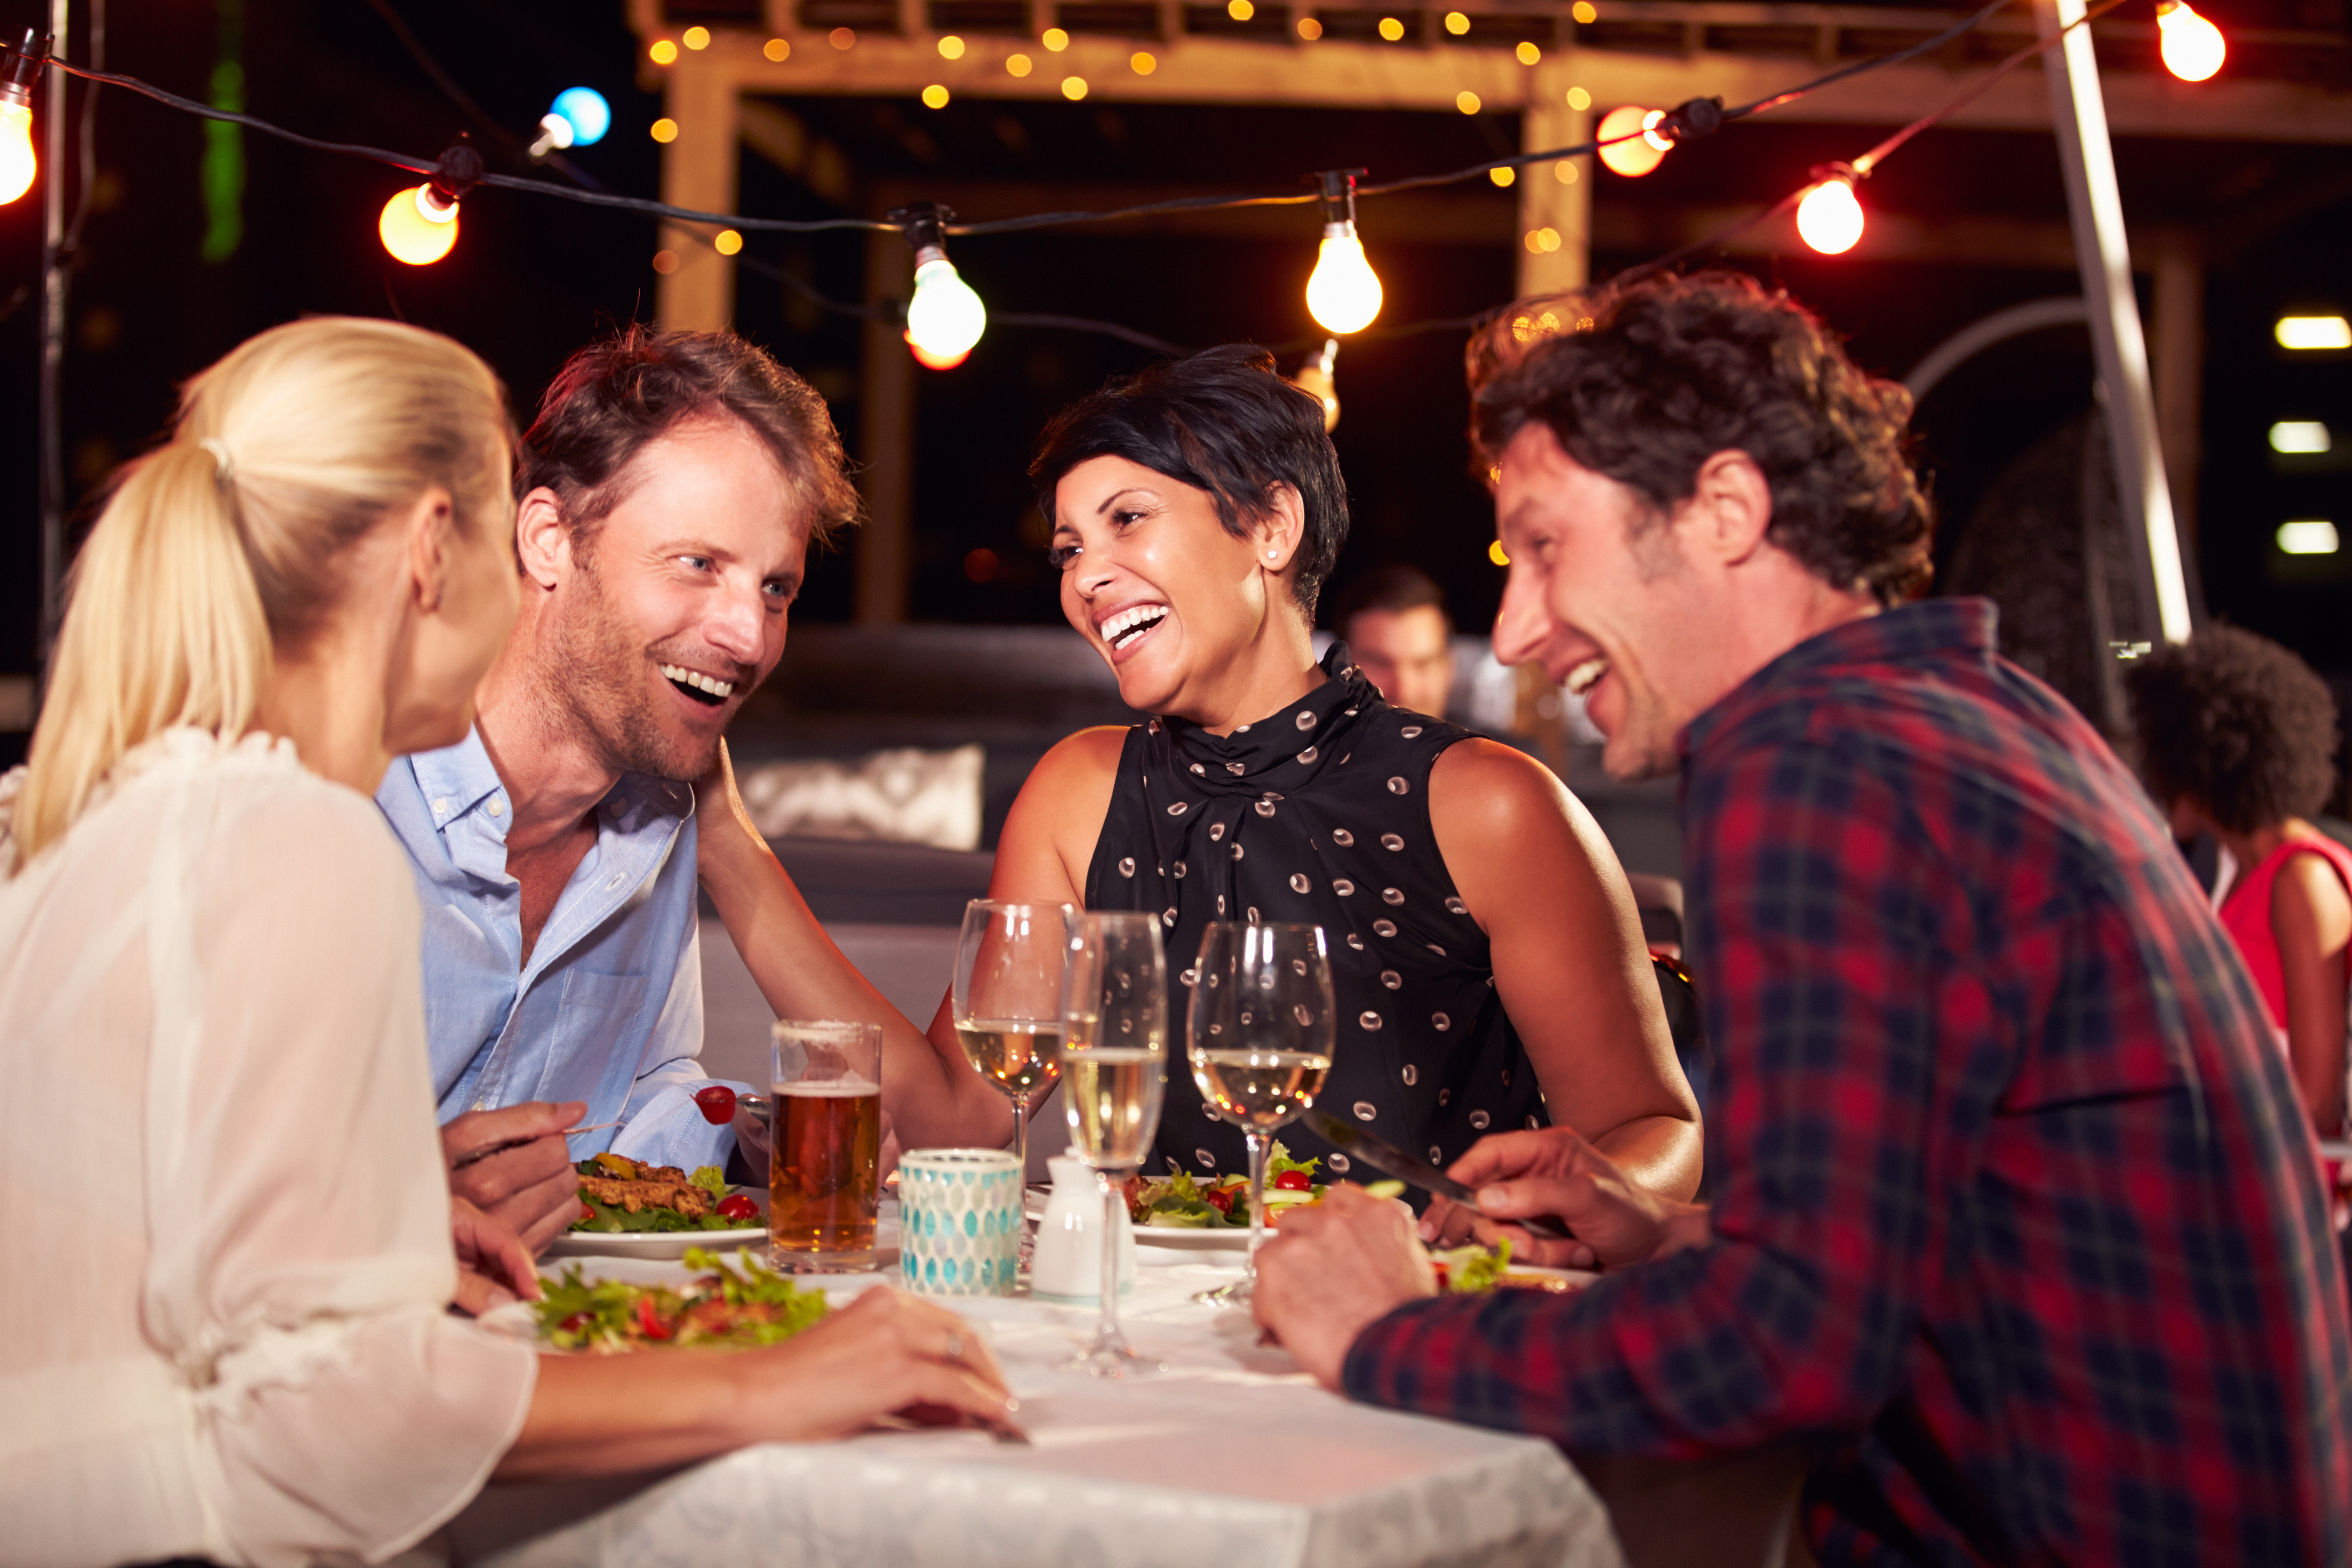 Des amis profitent d'un repas | Source : Shutterstock